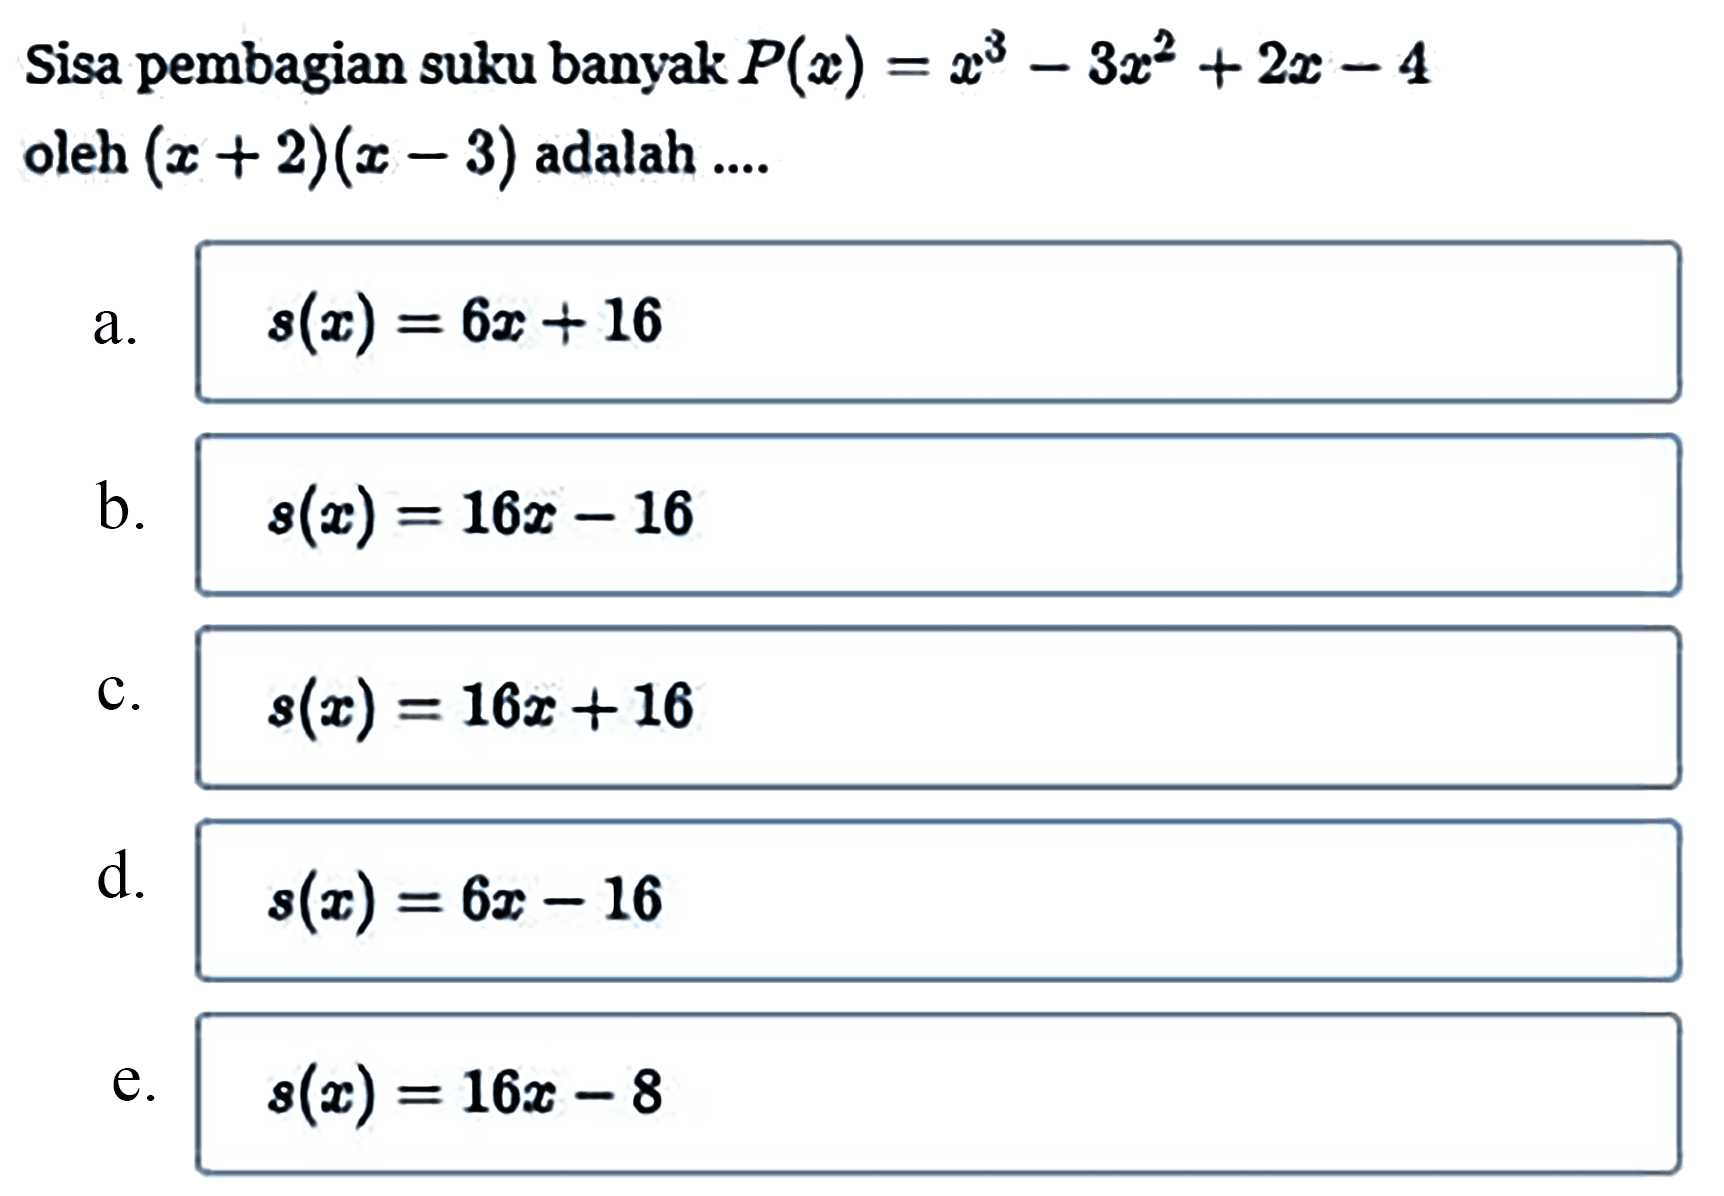 Sisa pembagian suku banyak P(x)=x^3-3x^2+2x-4 oleh (x+2)(x-3) adalah ...